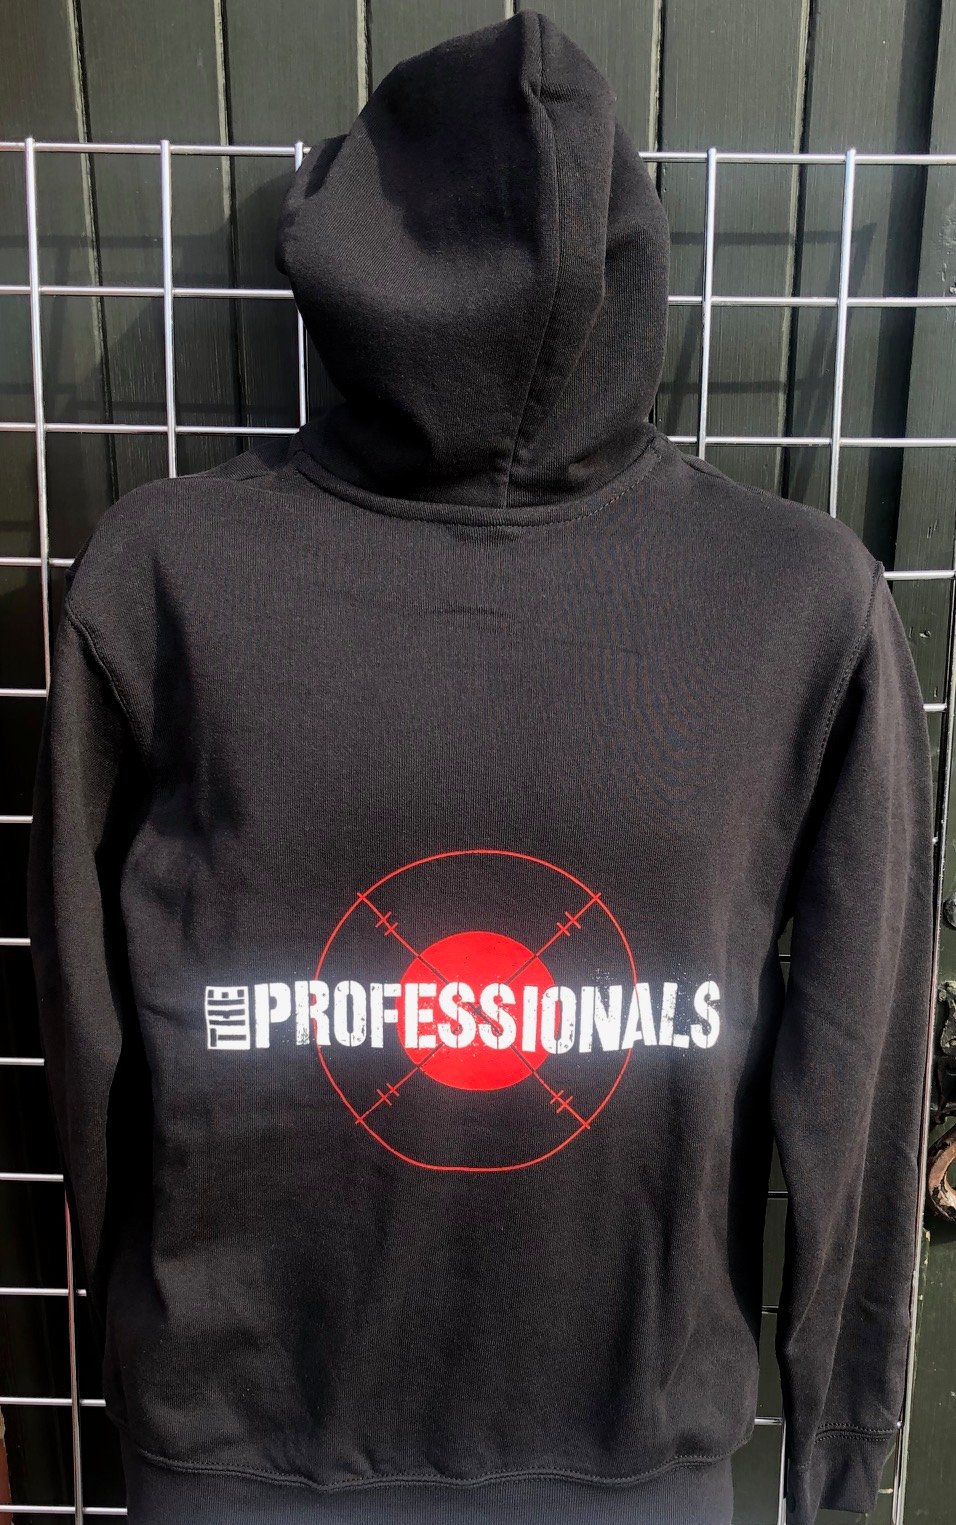 Image of The PROFESSIONALS 'Target' Design Black Zip Front Hoodie Sweatshirt